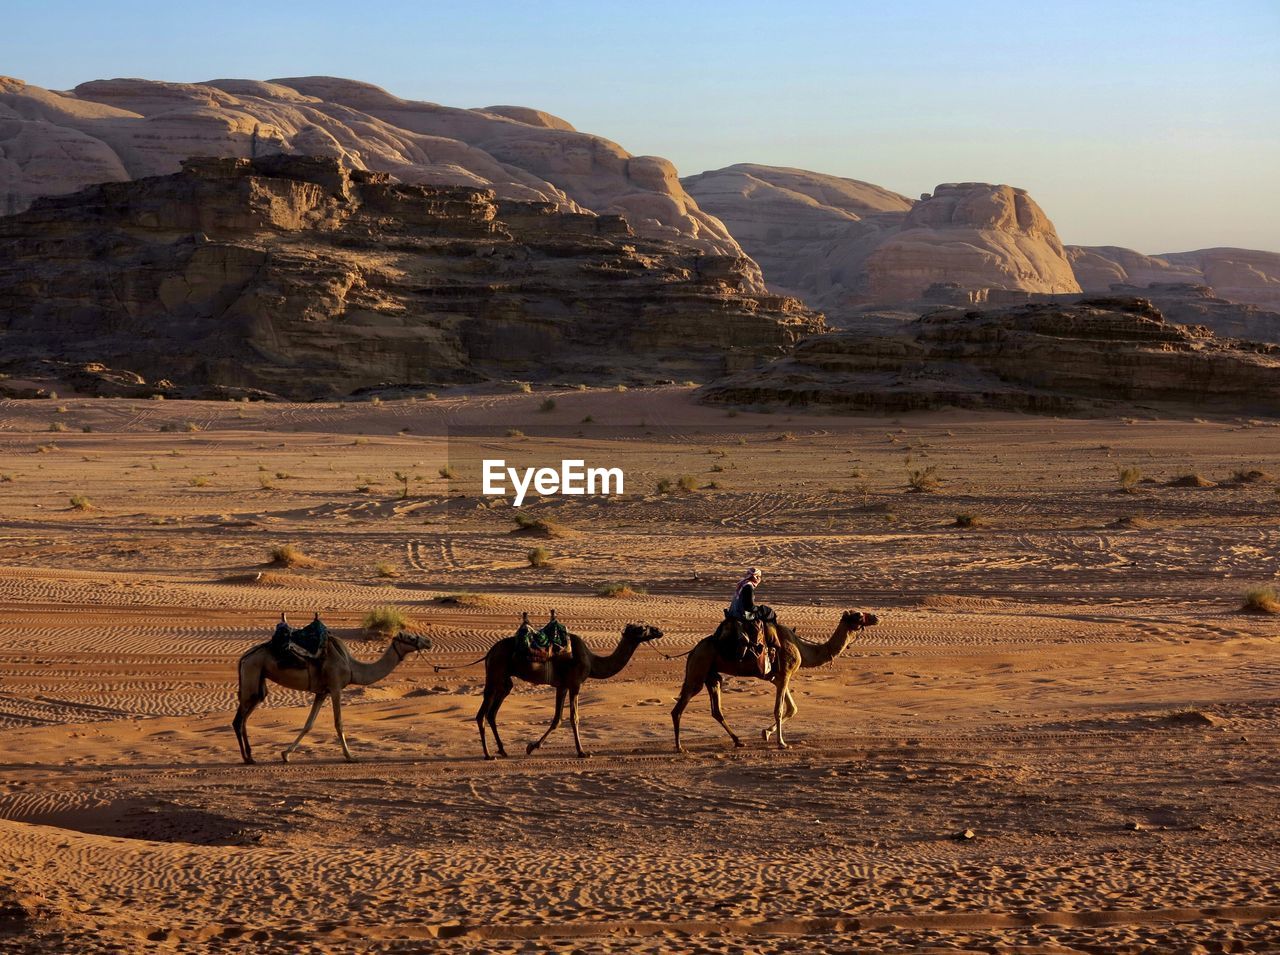 view of horses on desert